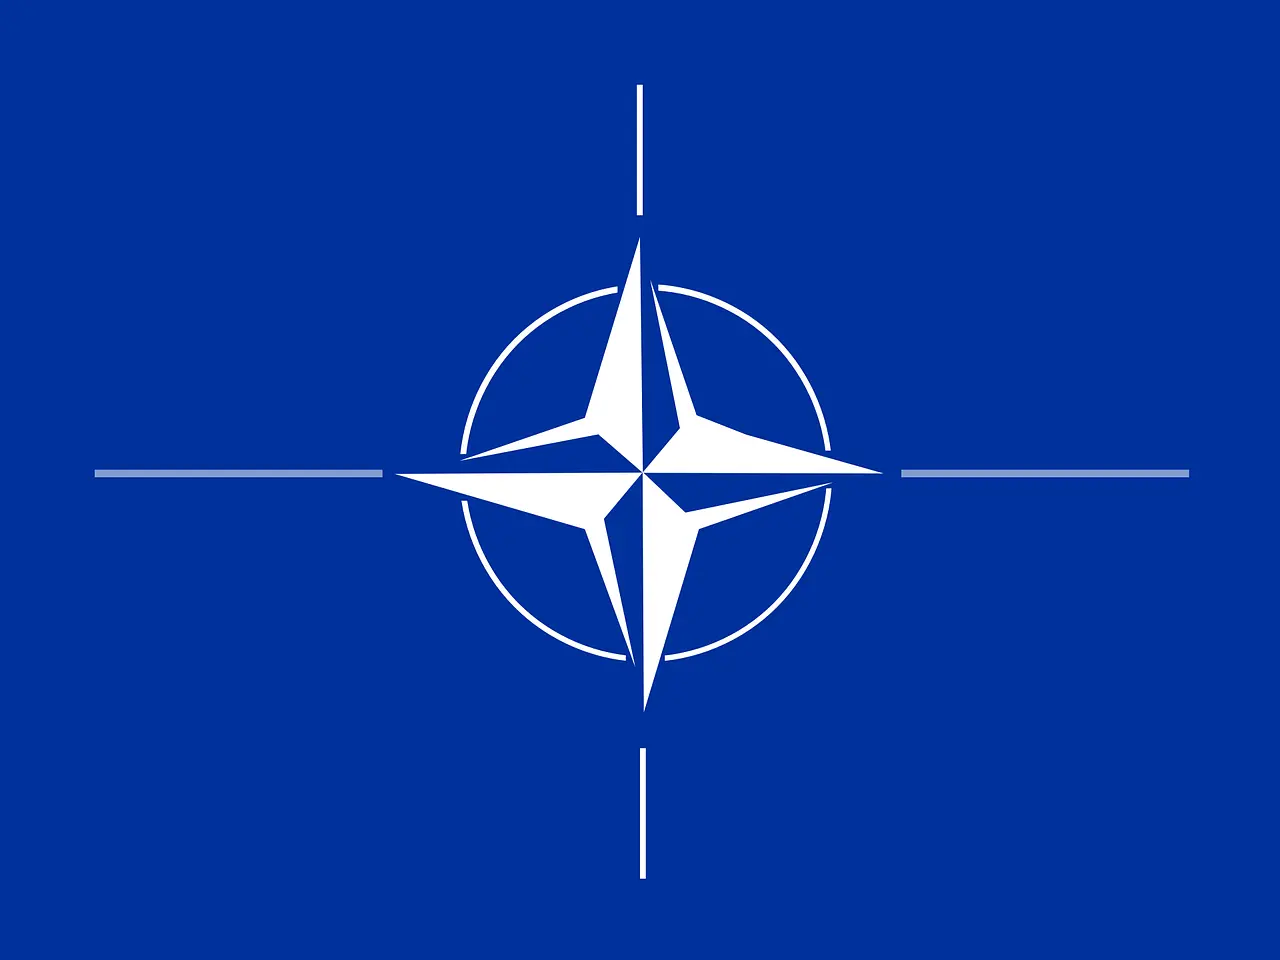 creacion de la otan resumen - Cómo fue la creacion de la OTAN